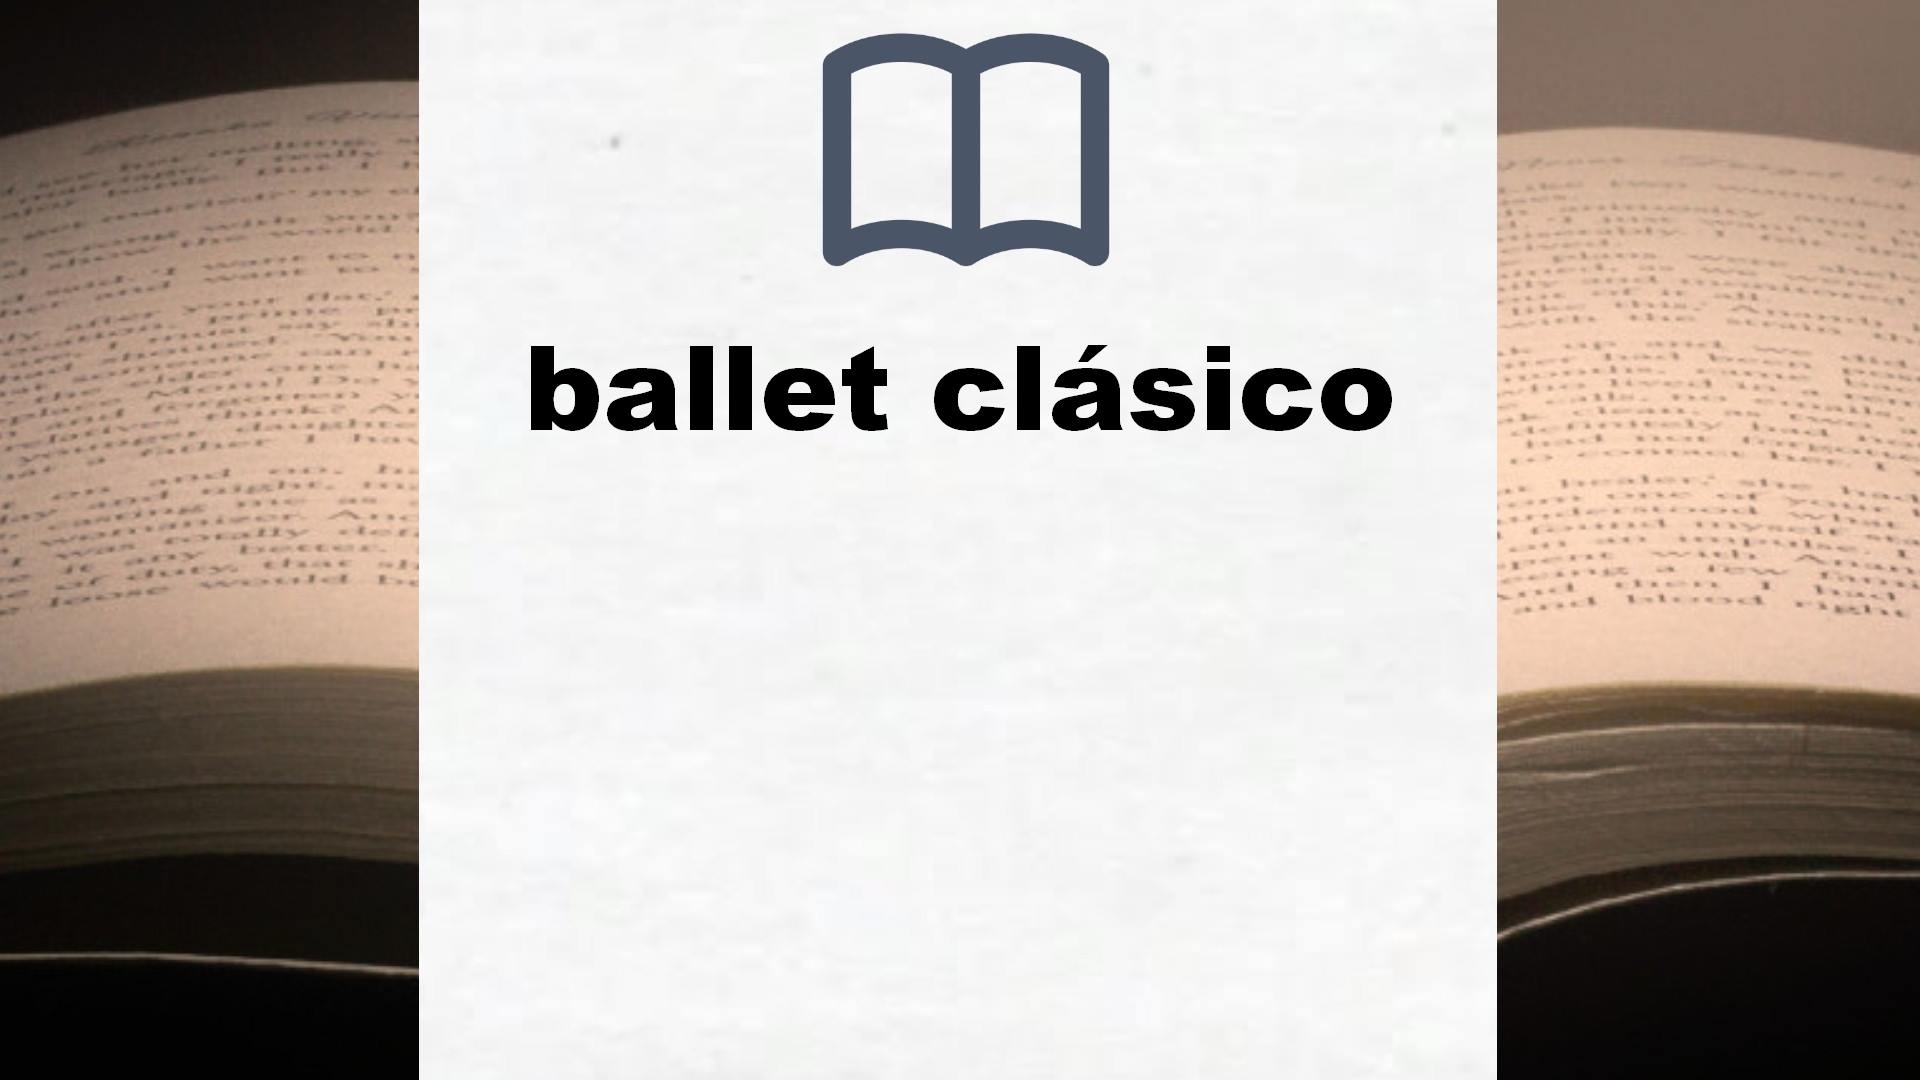 Libros sobre ballet clásico